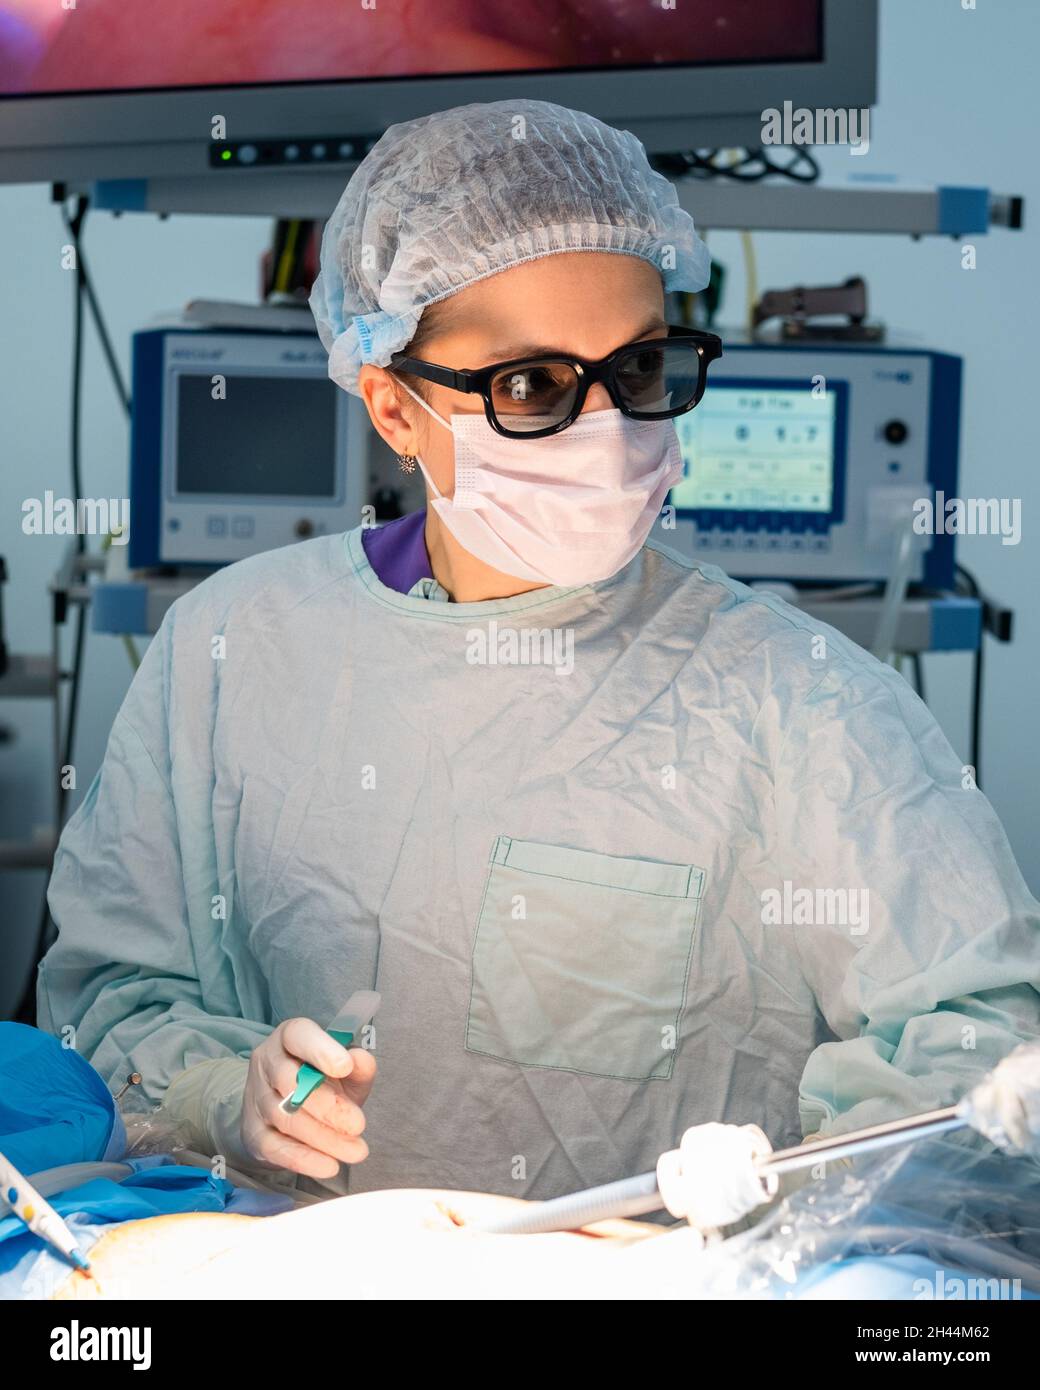 Chirurgen Frau trägt eine 3D-Brille, die während einer Operation ein  Skalpell in der Hand hält. Der Arzt führt laparoskopische Chirurgie mit  modernen innovativen High-Tech-chirurgischen Geräten durch Stockfotografie  - Alamy